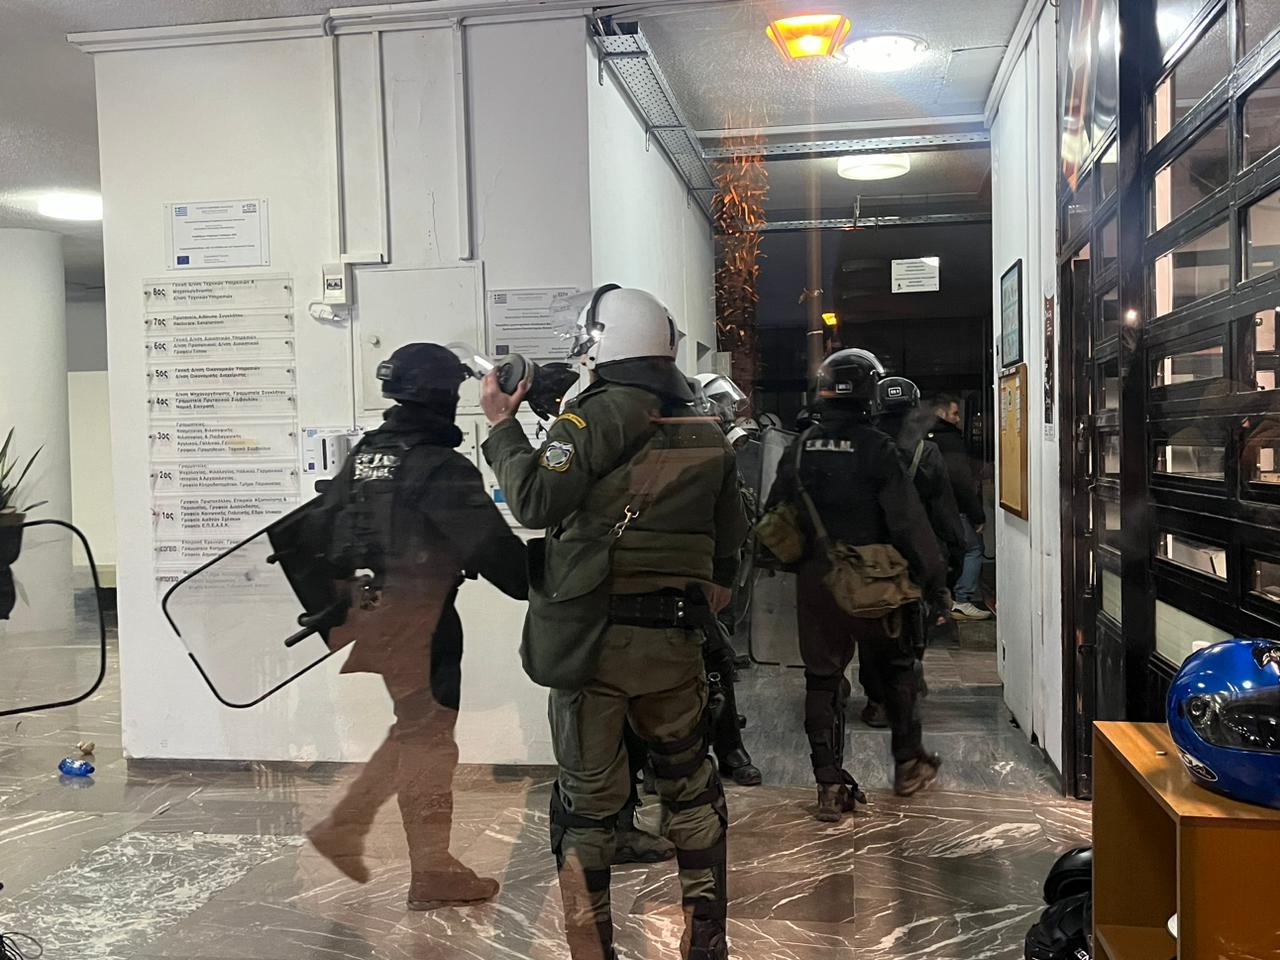 Θεσσαλονίκη: ΜΑΤ στο ΑΠΘ για να εκκενωθεί η κατάληψη στην Πρυτανεία